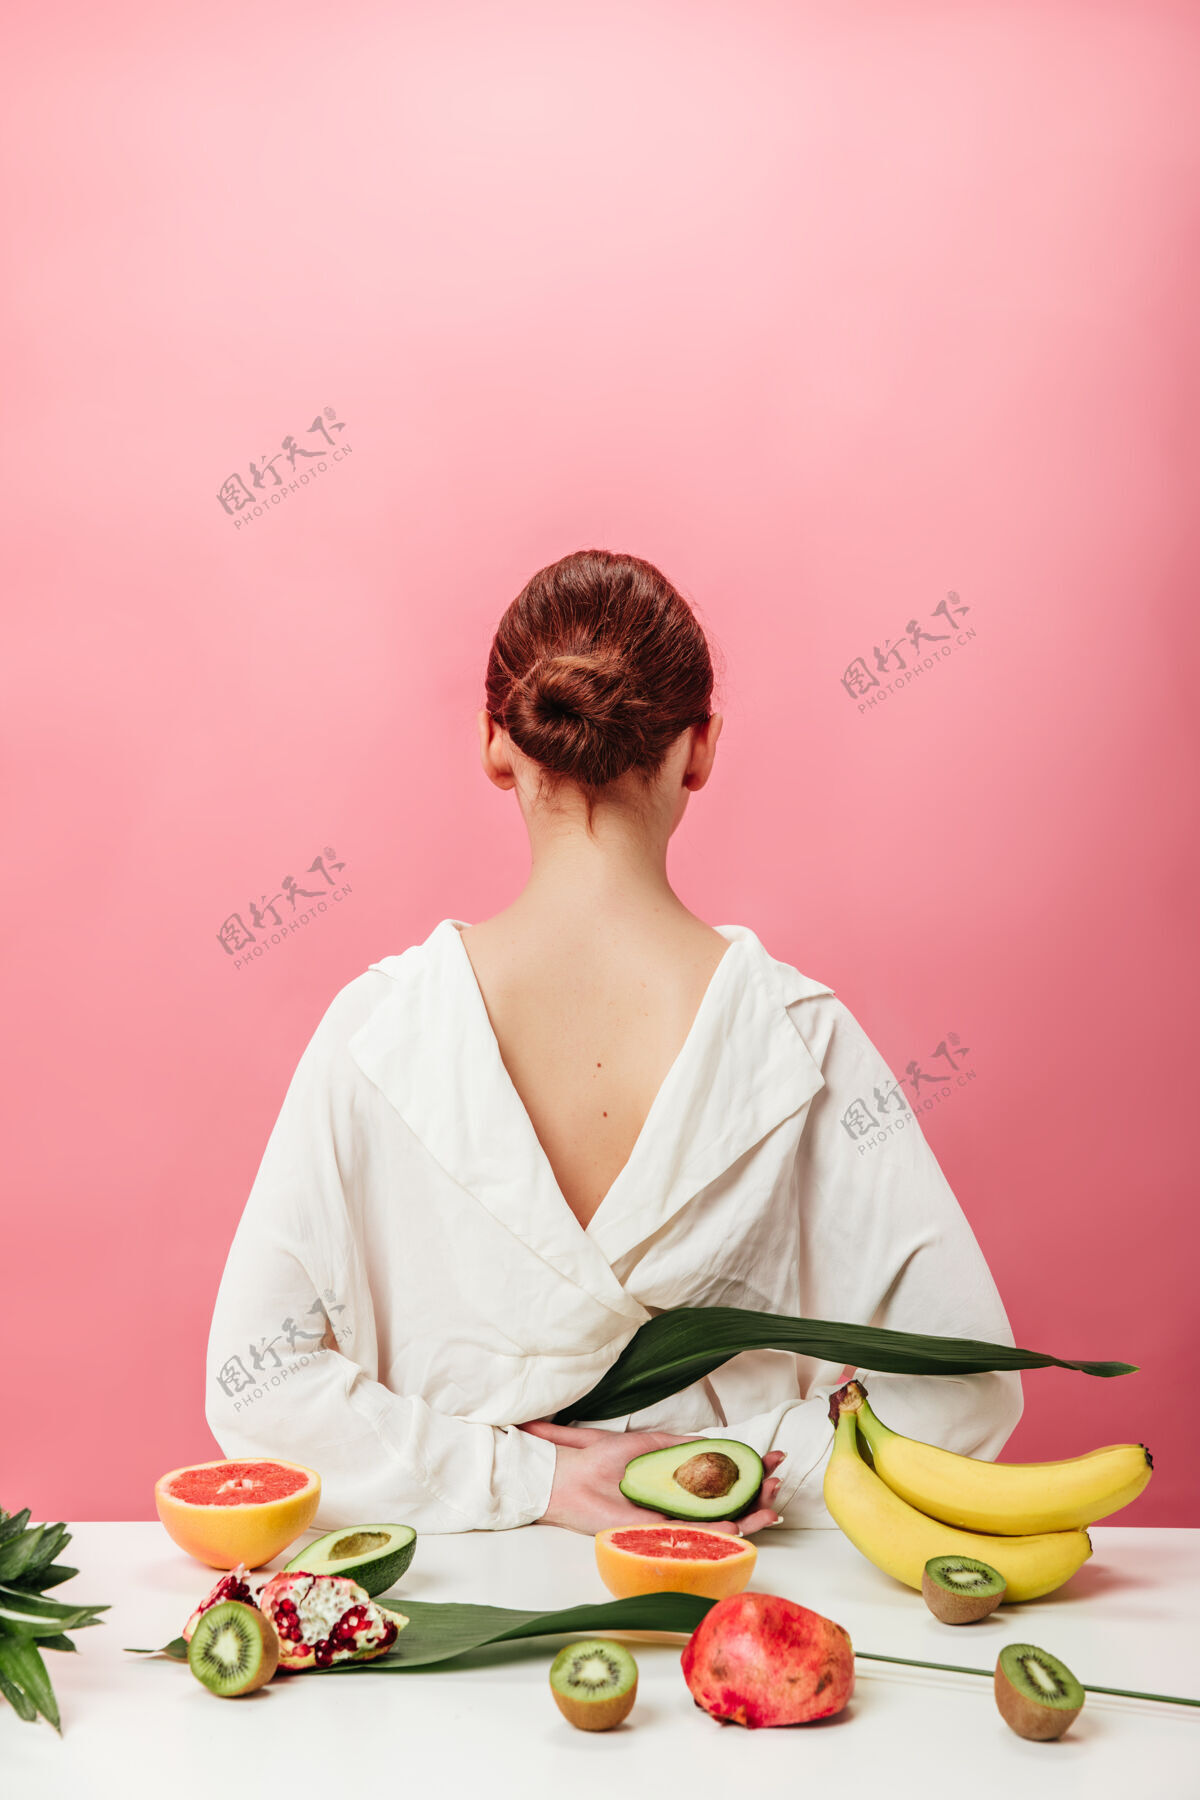 年轻人姜味女人的后视图和异国水果摄影棚拍摄的女孩在白色衬衫与香蕉 葡萄柚 石榴石猕猴桃和鳄梨粉红色的背景粉色石榴食物